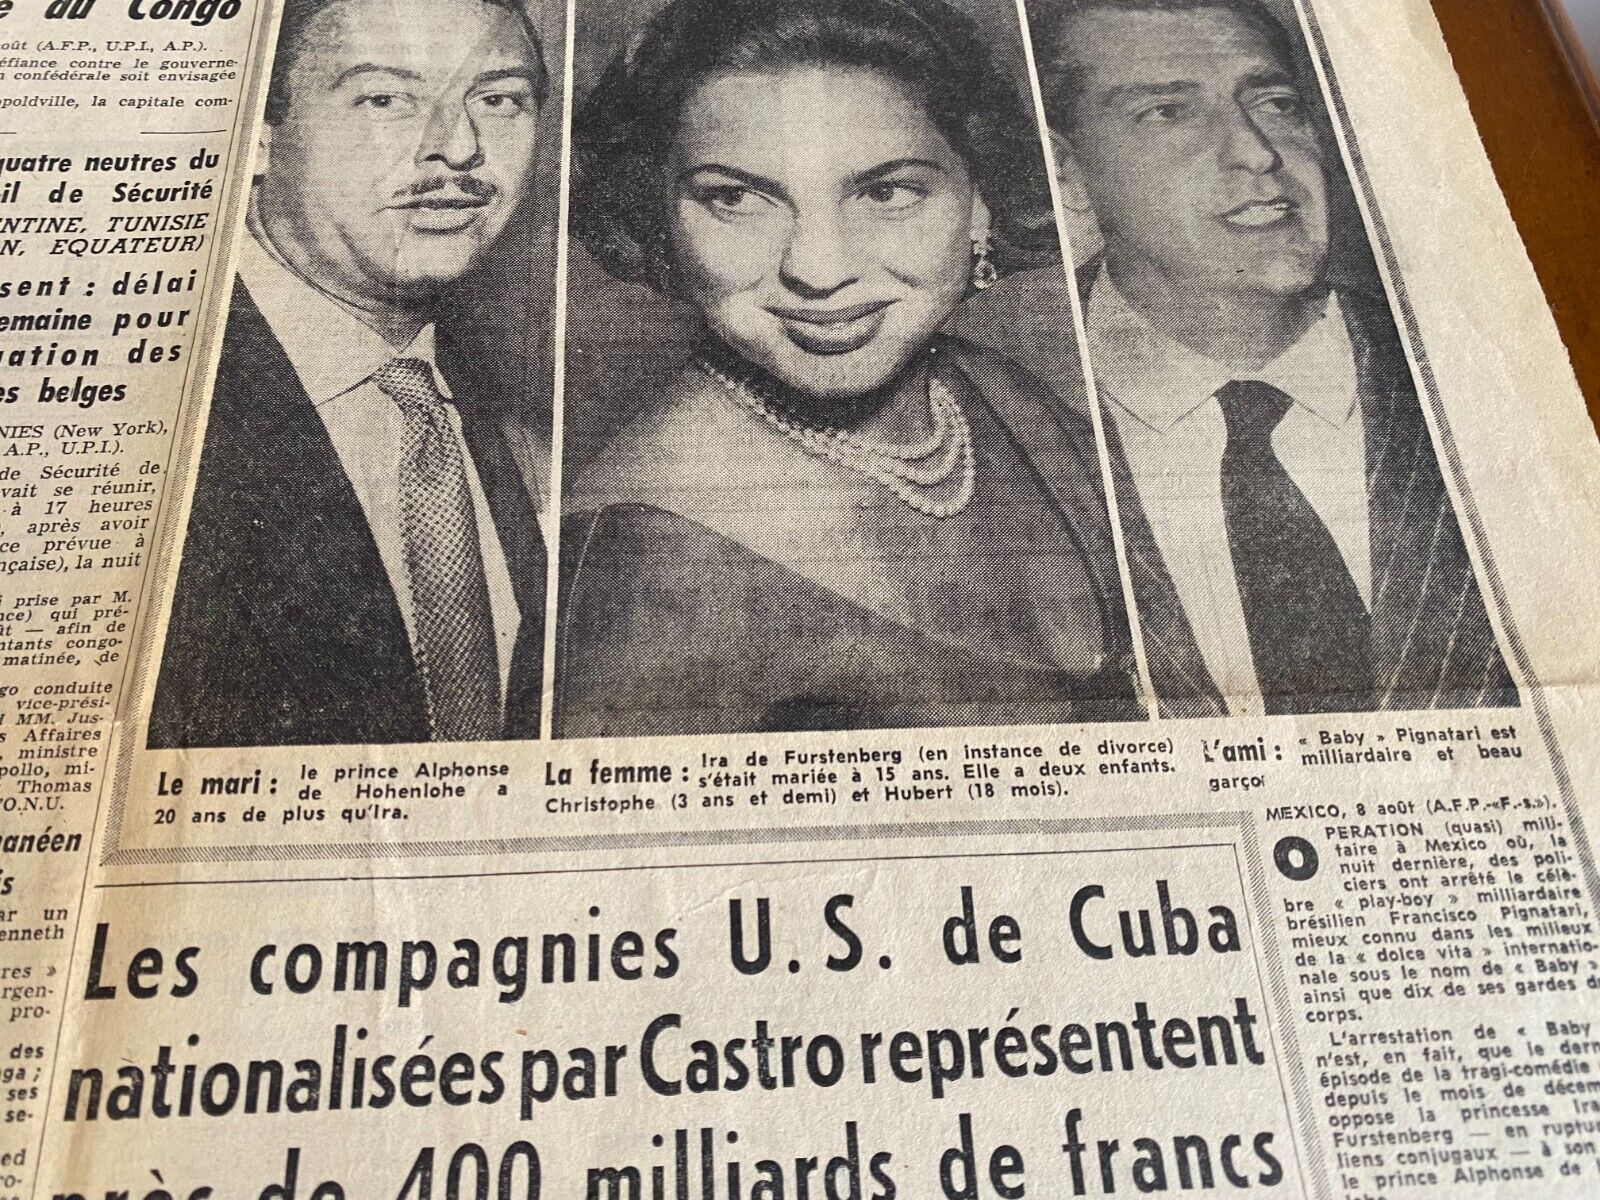 France-Soir 1960 Newspaper Gene Kelly, Fidel Castro,  Ira von Fürstenberg